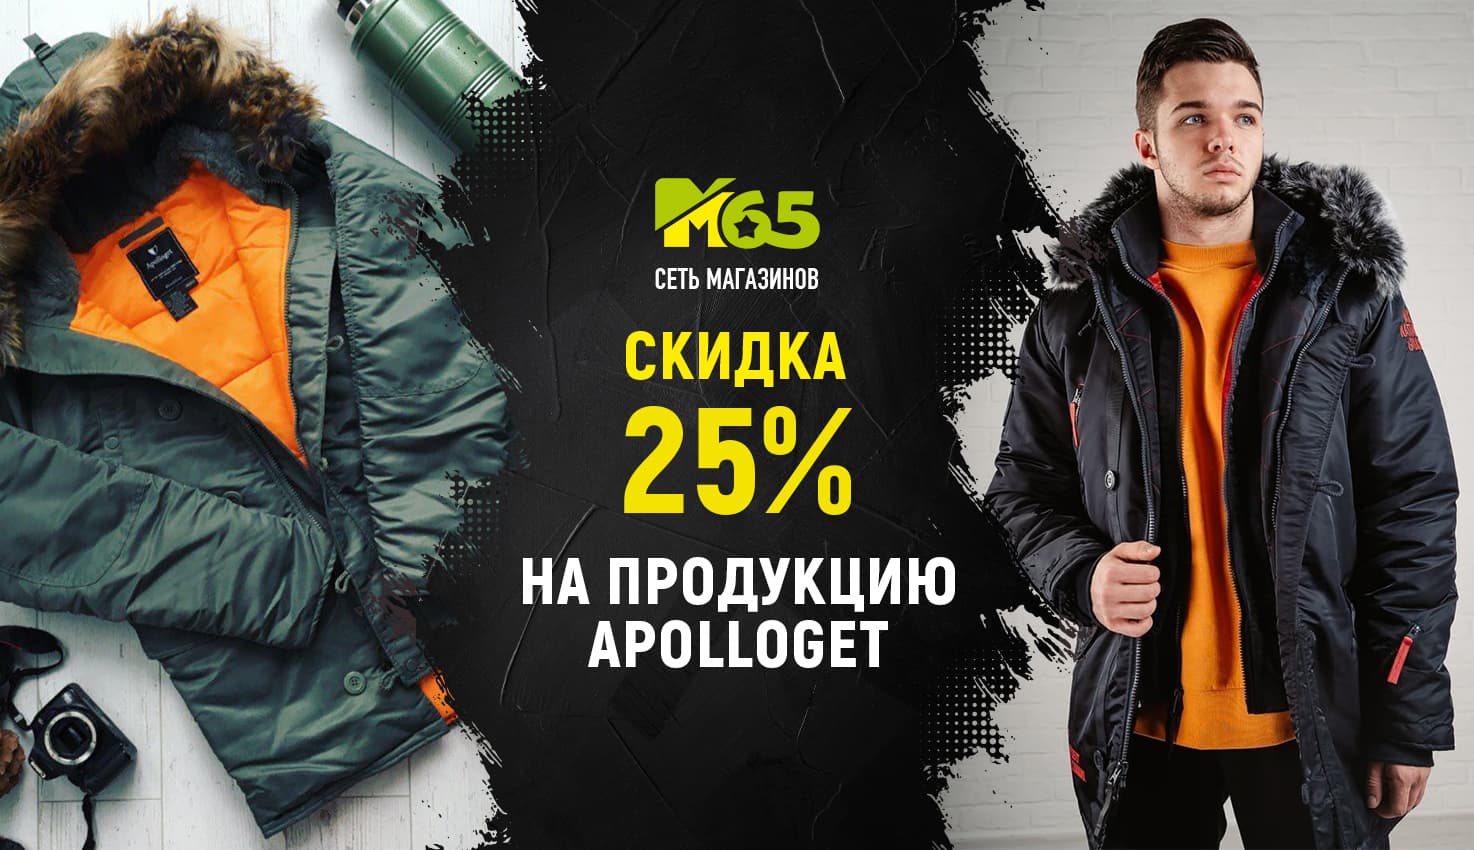 Распродажа Apolloget 25% (Январь)